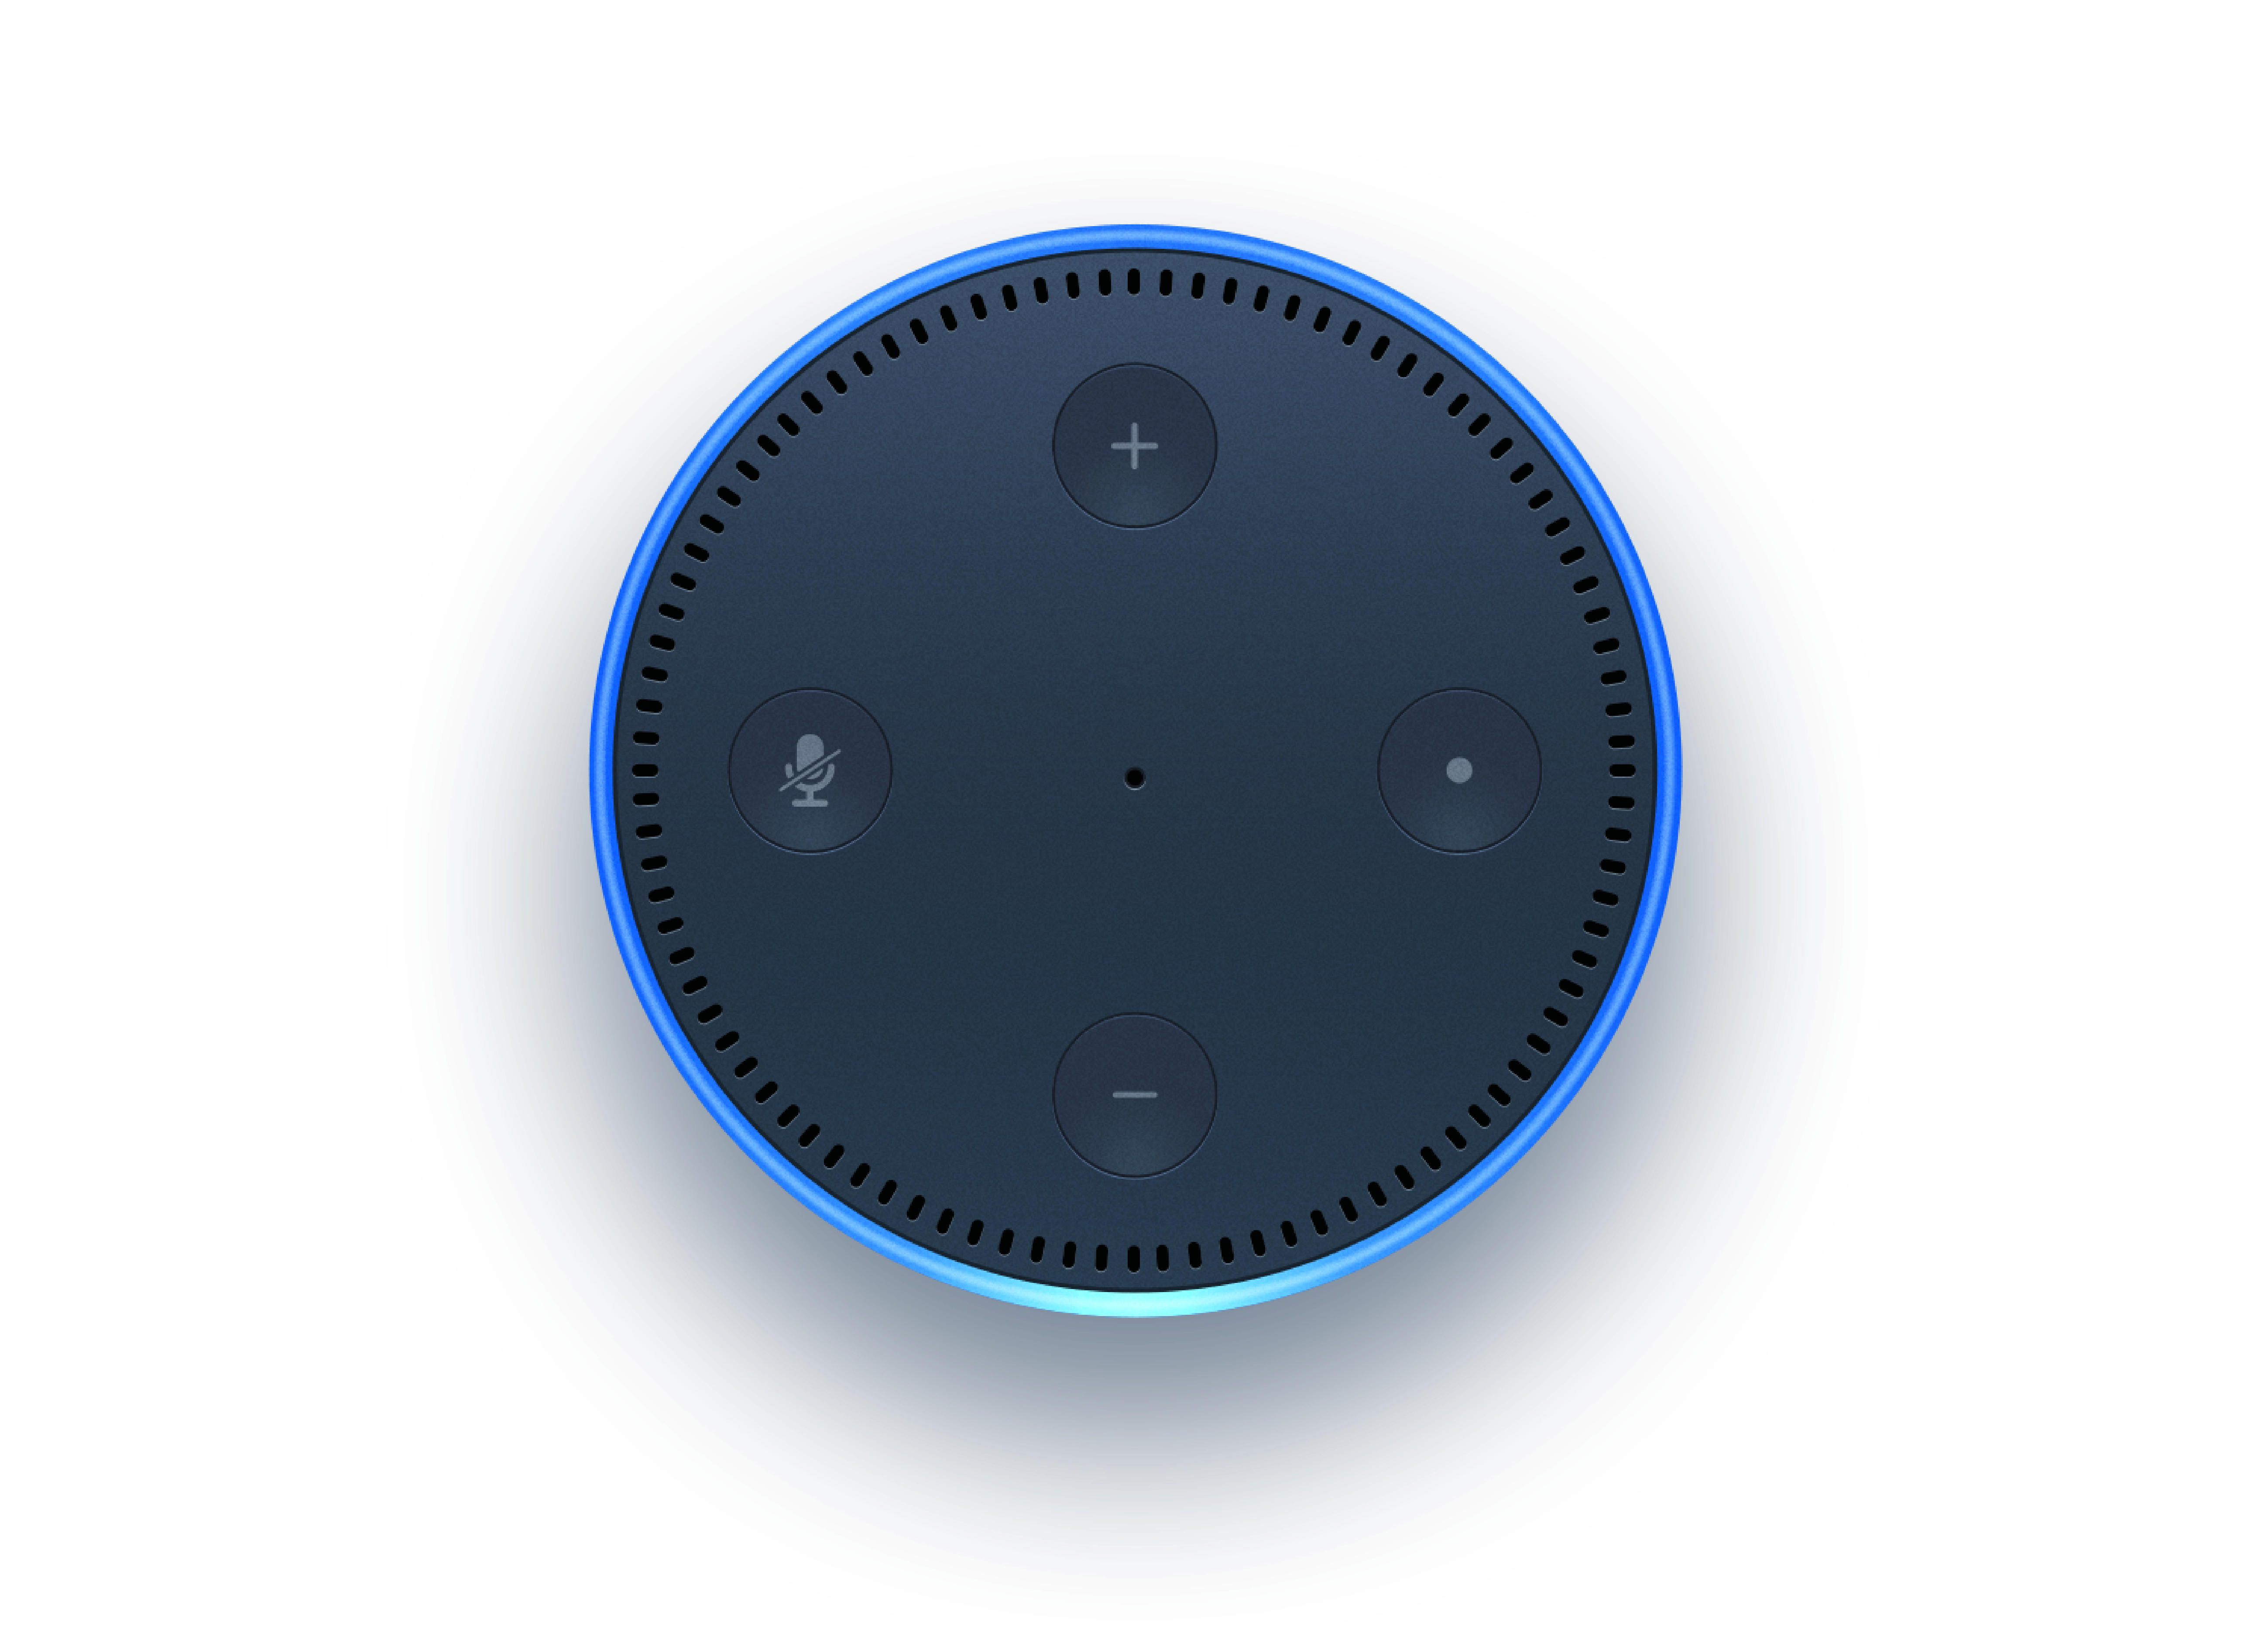 An Amazon Alexa